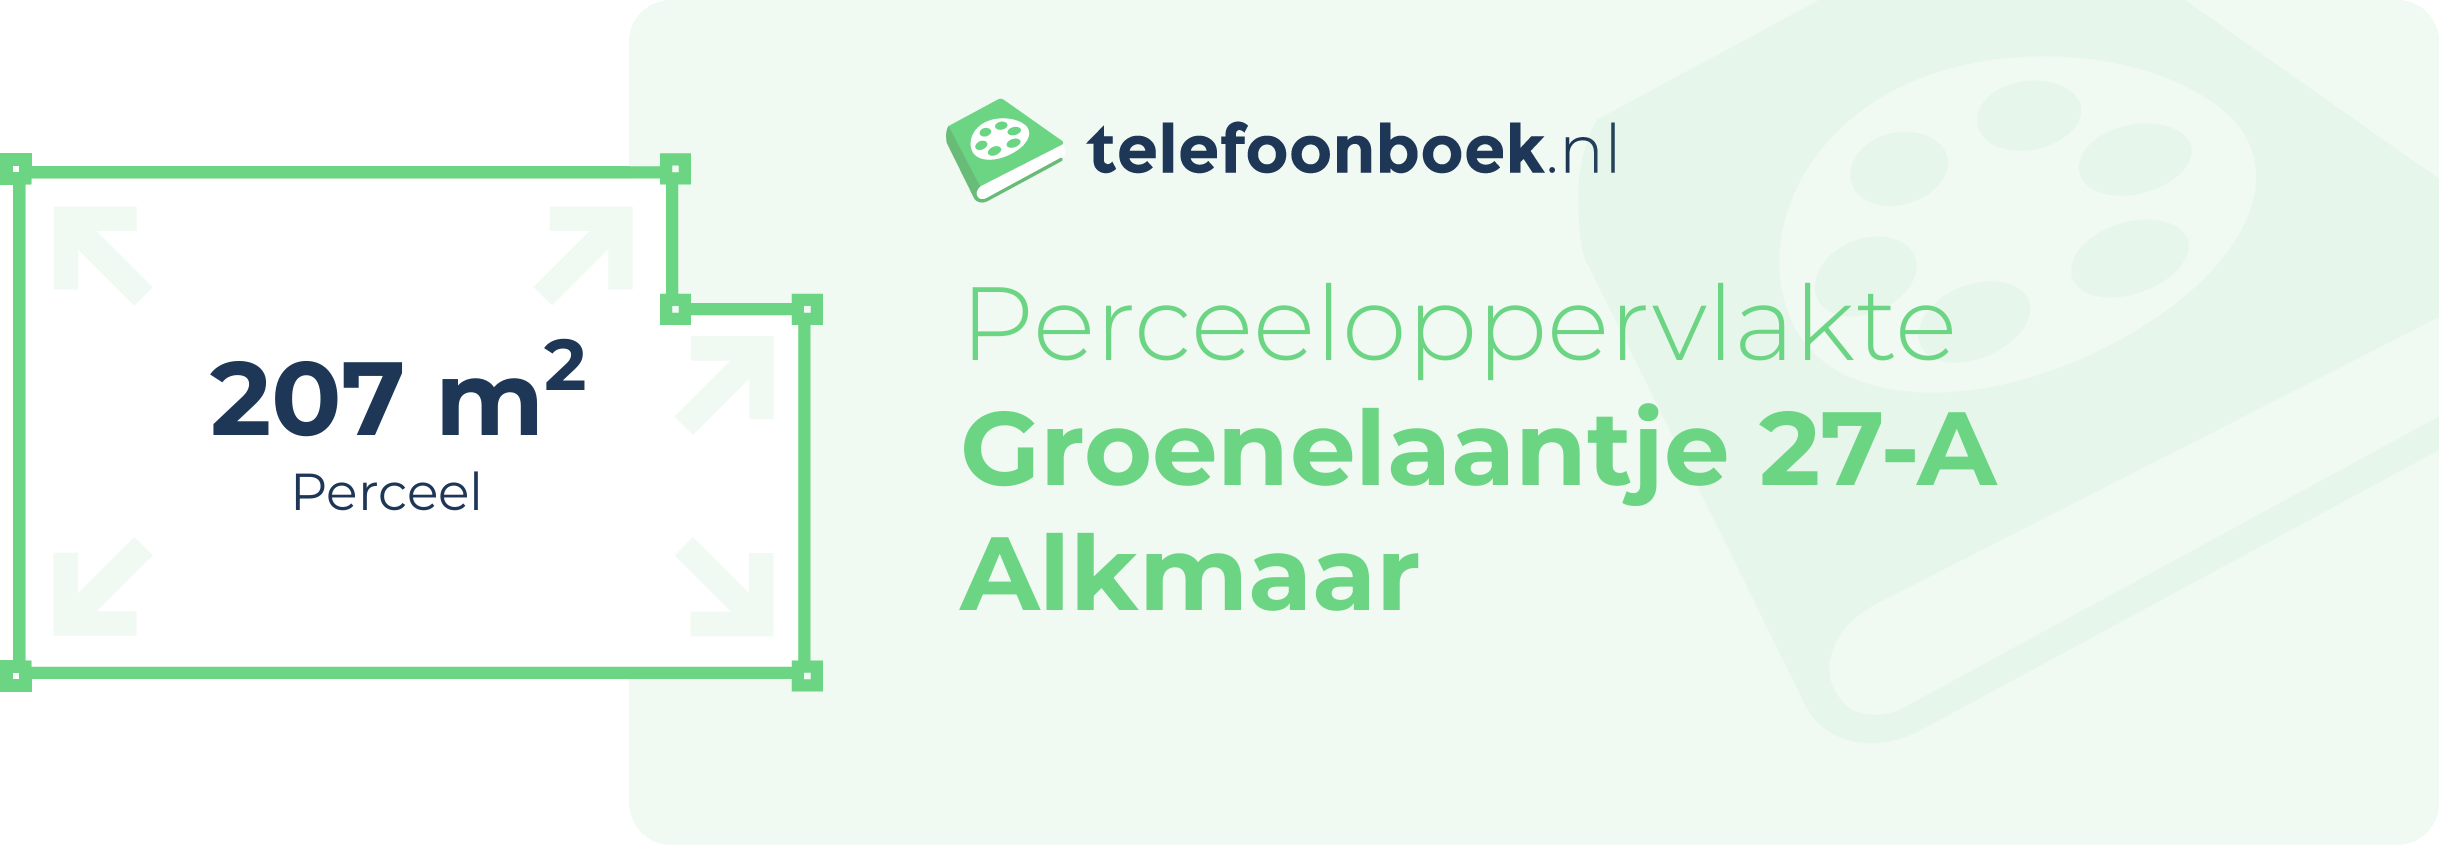 Perceeloppervlakte Groenelaantje 27-A Alkmaar